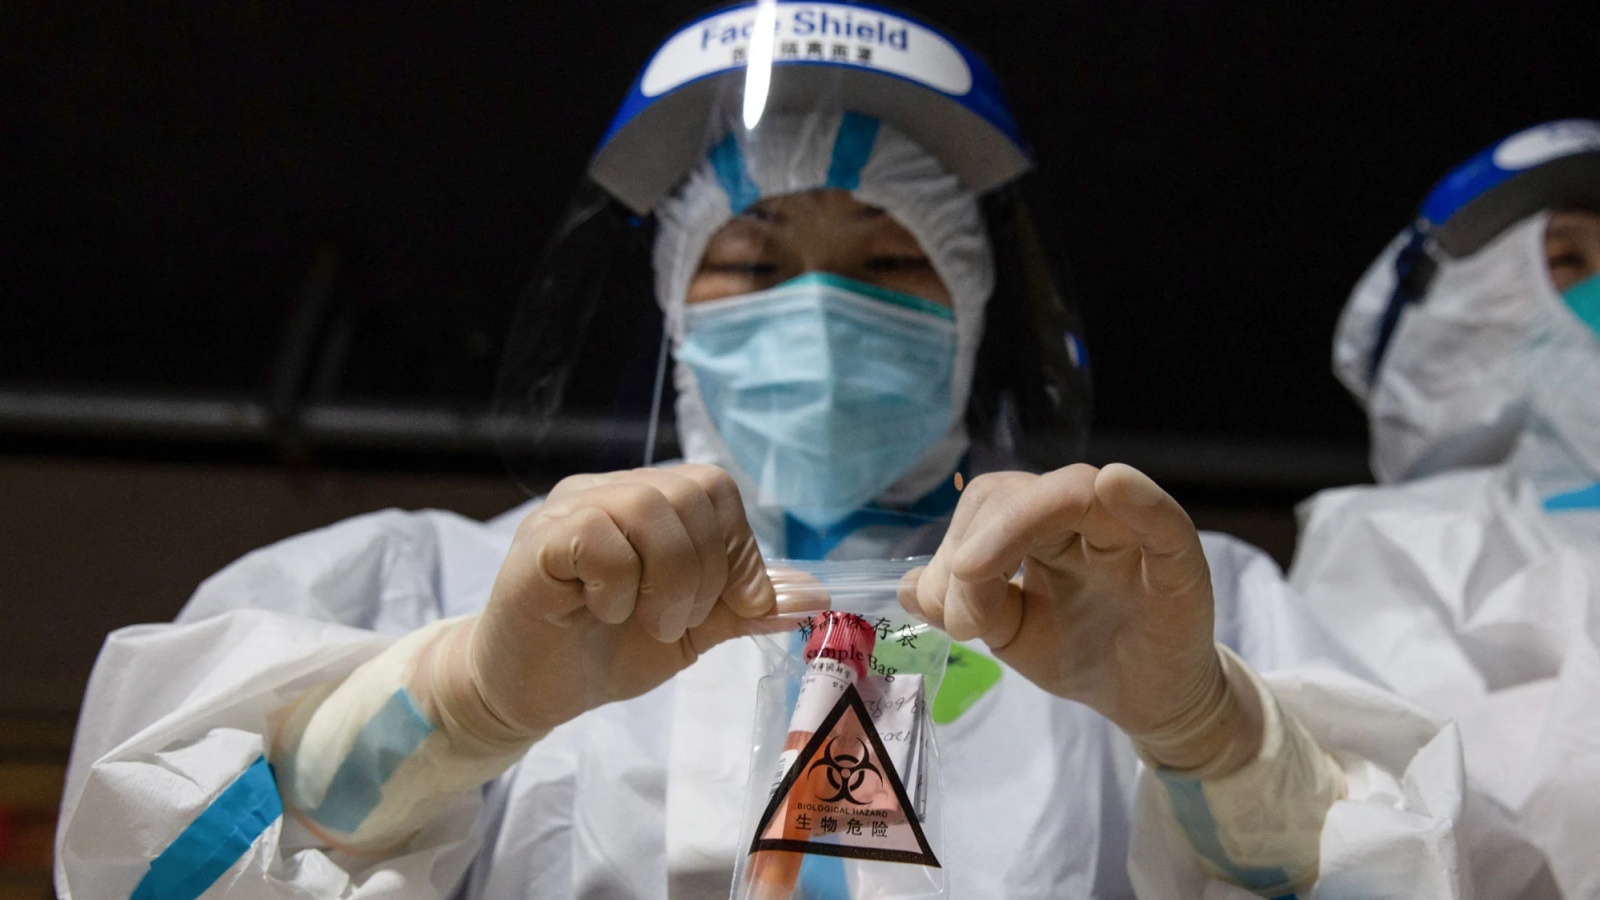 عامل طبي يجمع عينة من اختبار الحمض النووي لفيروس كوفيد-19 في نانجينغ، الصين